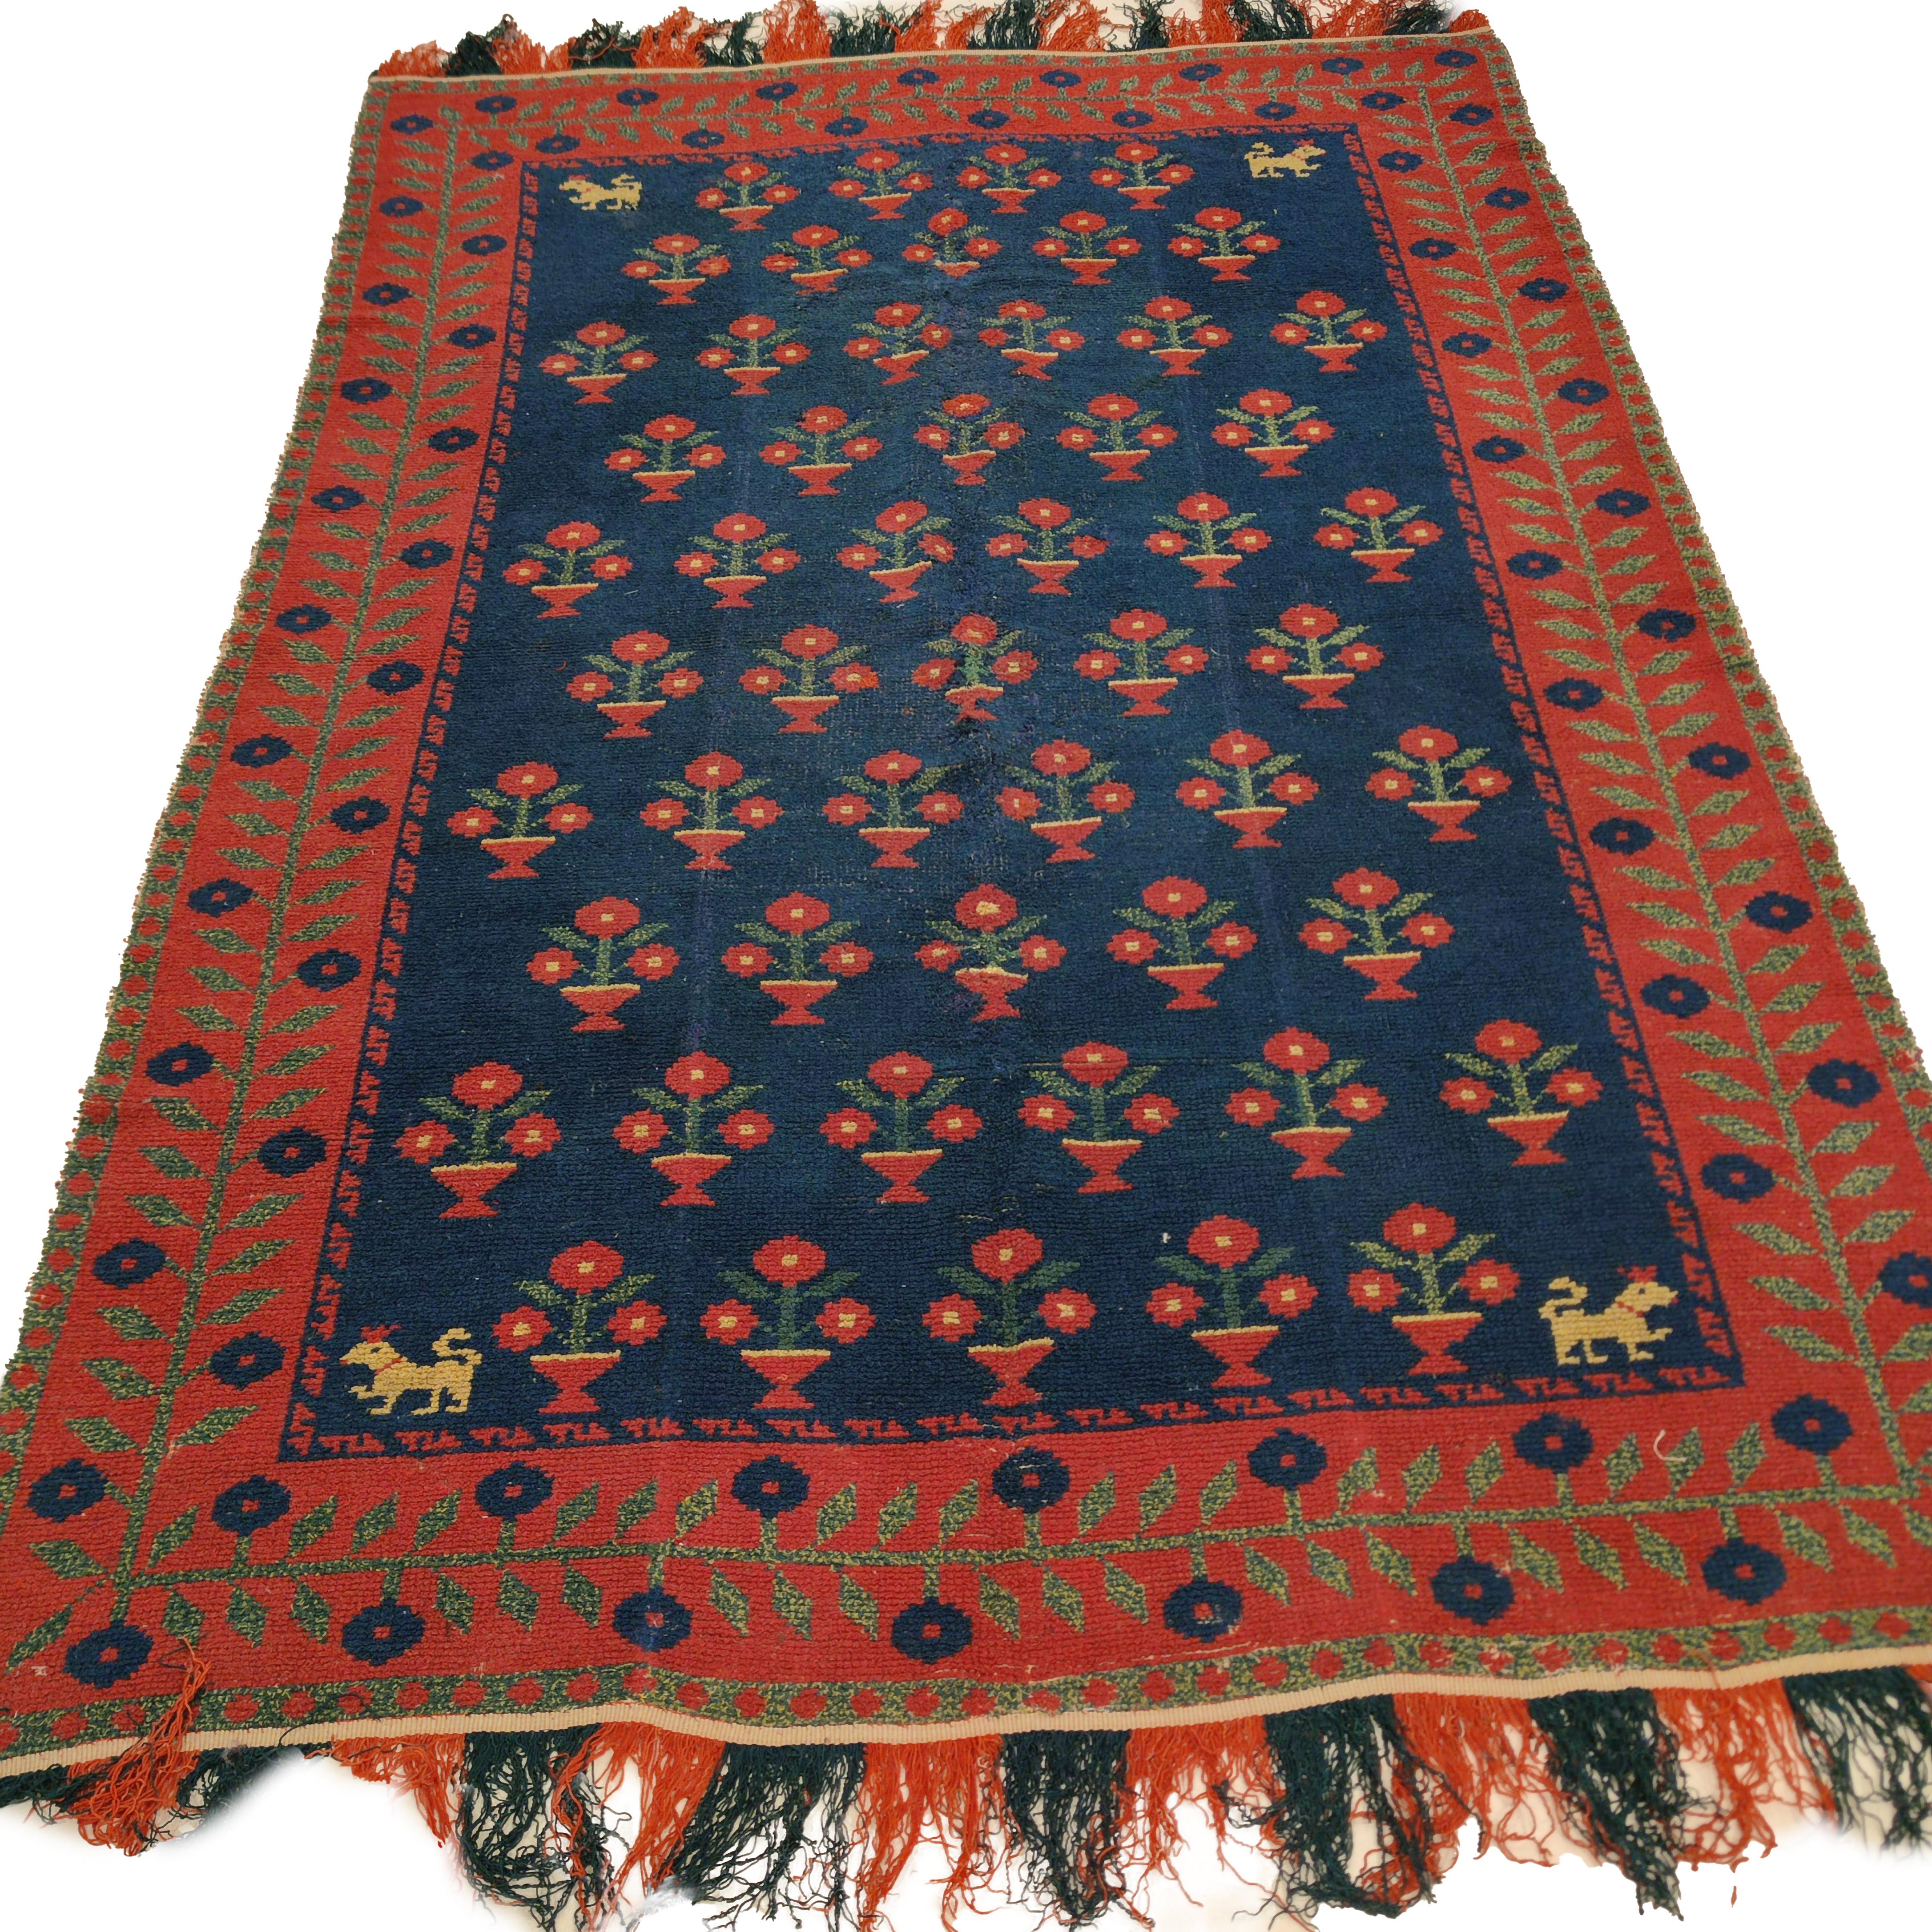 Alpujarra-Teppiche wurden traditionell zwischen dem 15. und 19. Jahrhundert in den Dörfern des Alpujarra-Distrikts gewebt, der im Süden Spaniens in der Region Granada liegt. Sie werden aus Wolle auf einem Leinengrund in Schlingentechnik gewebt,